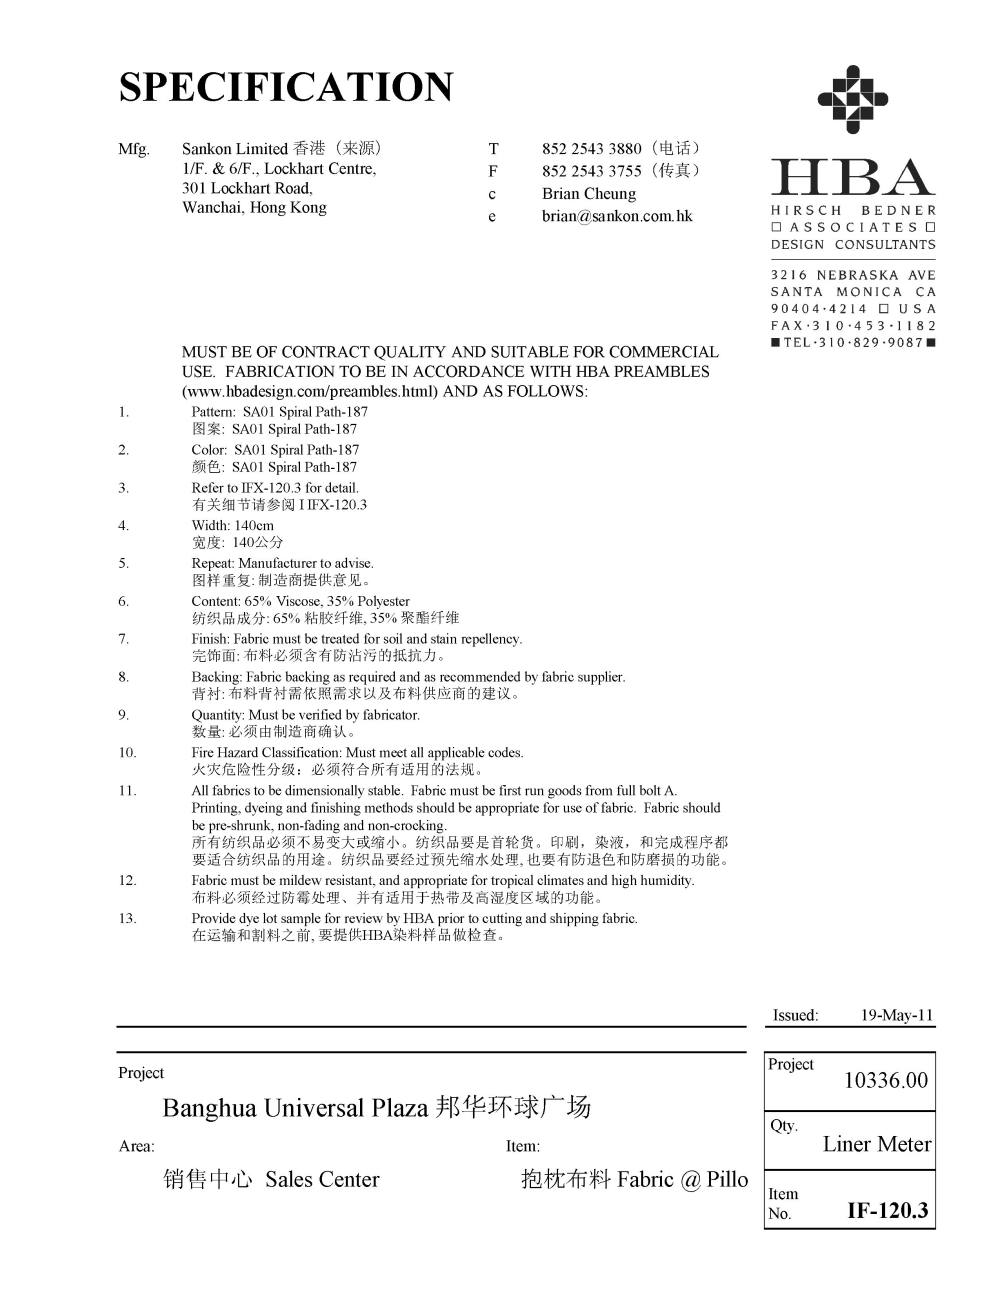 HBA新作——广州邦华环球广场销售中心（资料补充）_家具设计说明书_页面_21.jpg